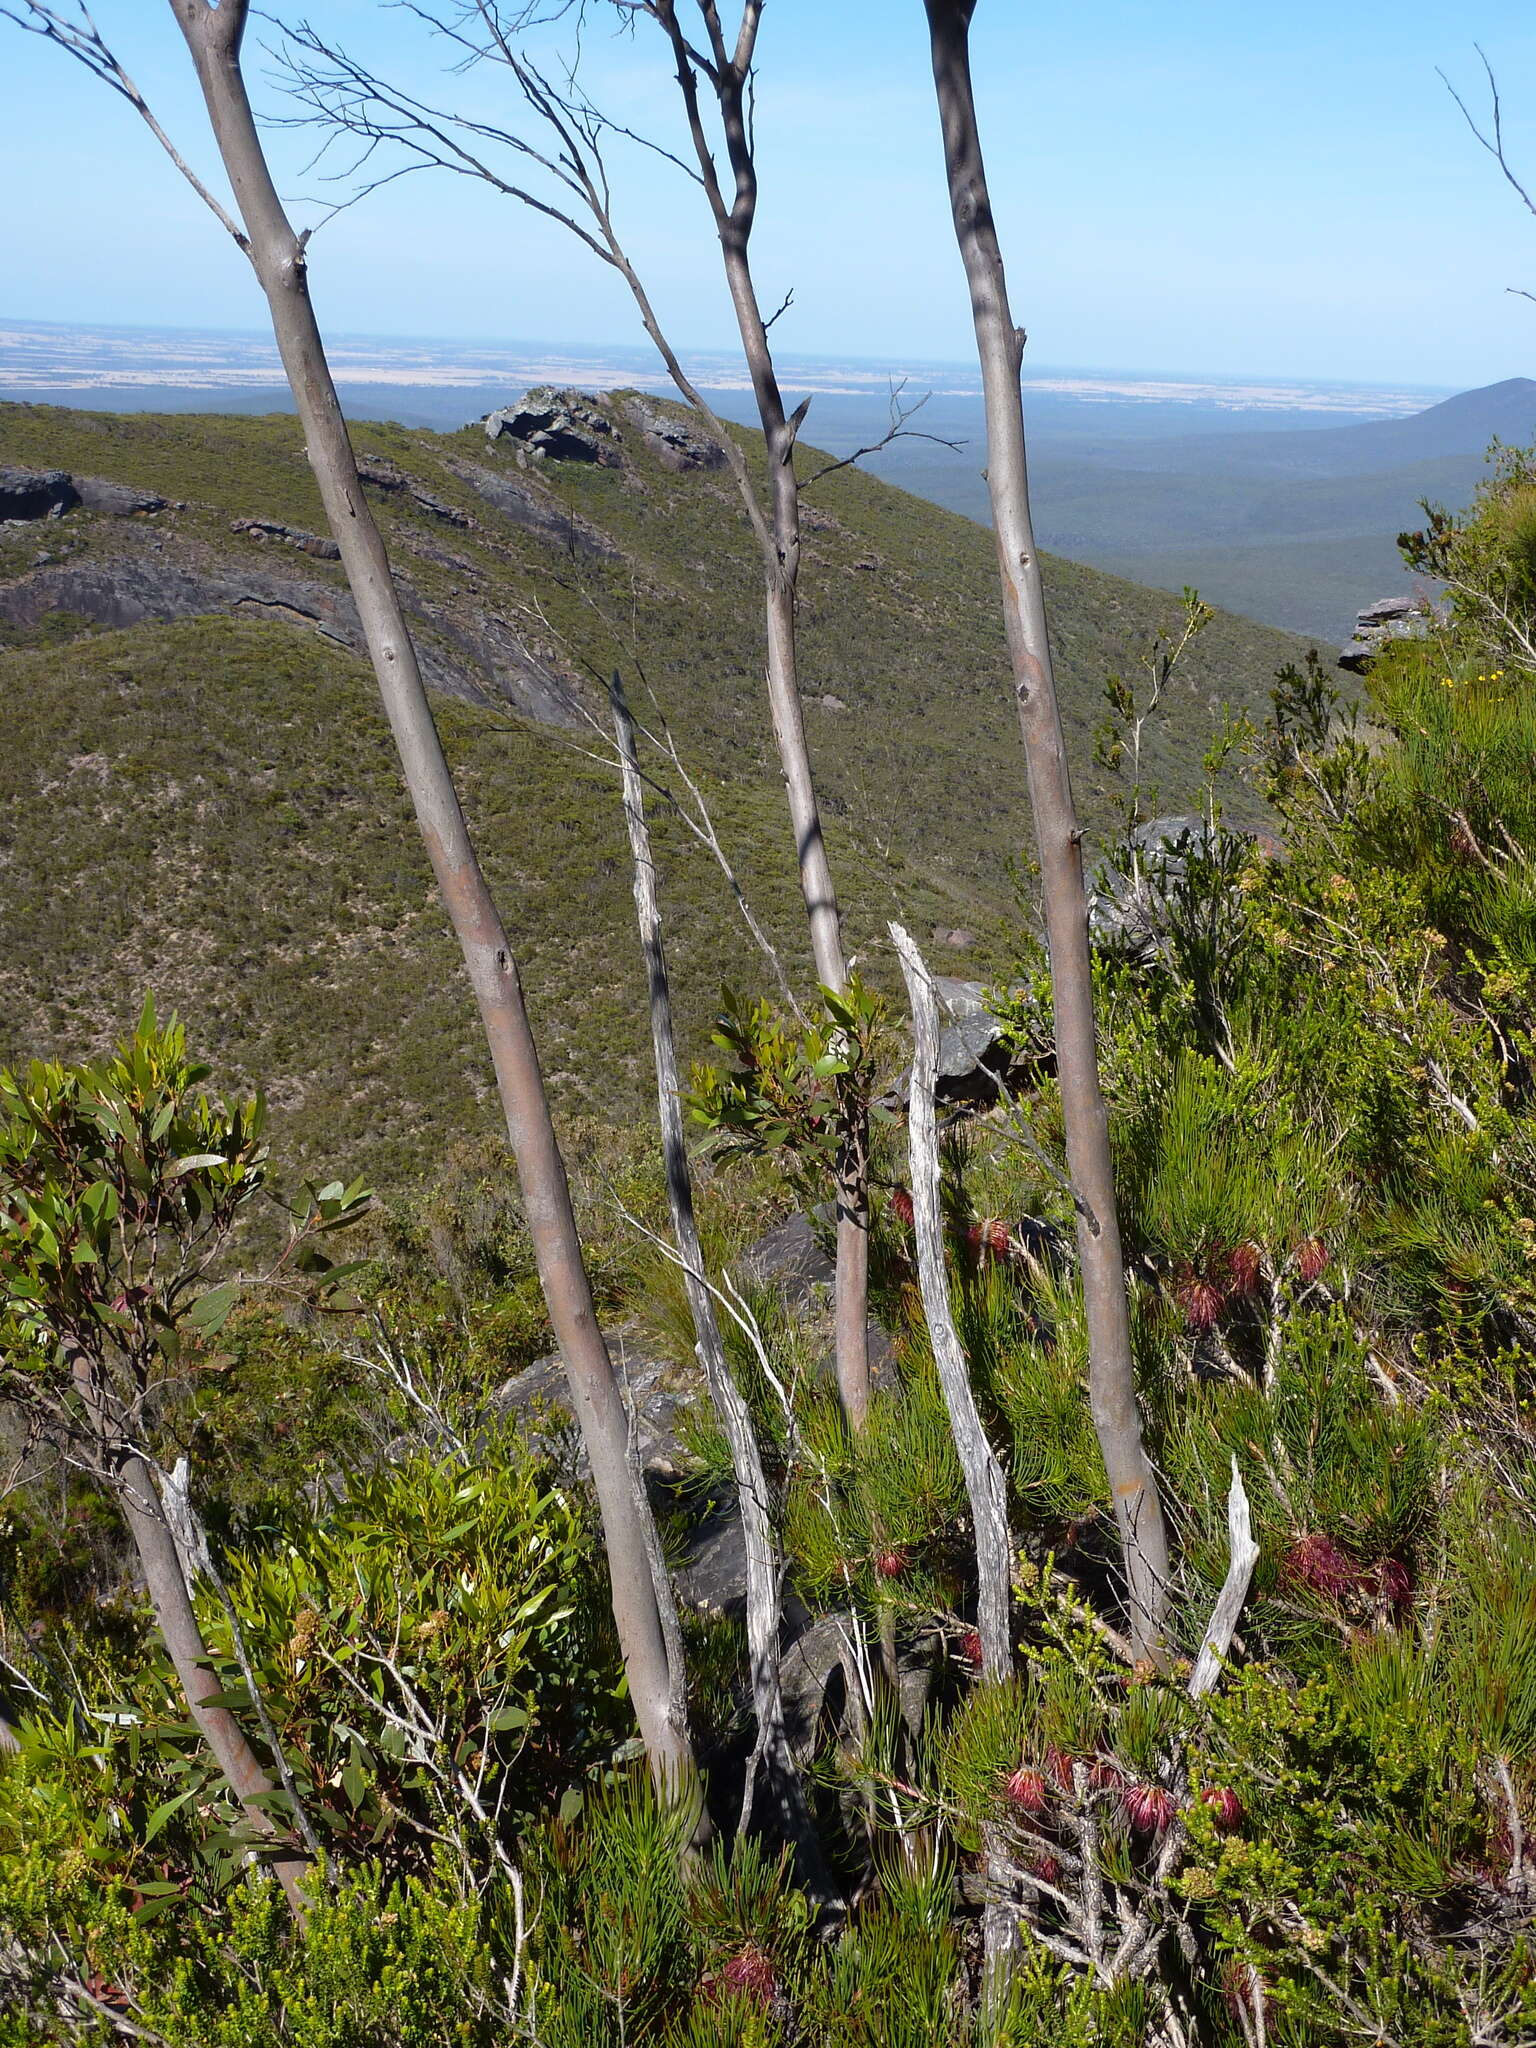 Image of Eucalyptus talyuberlup D. J. Carr & S. G. M. Carr